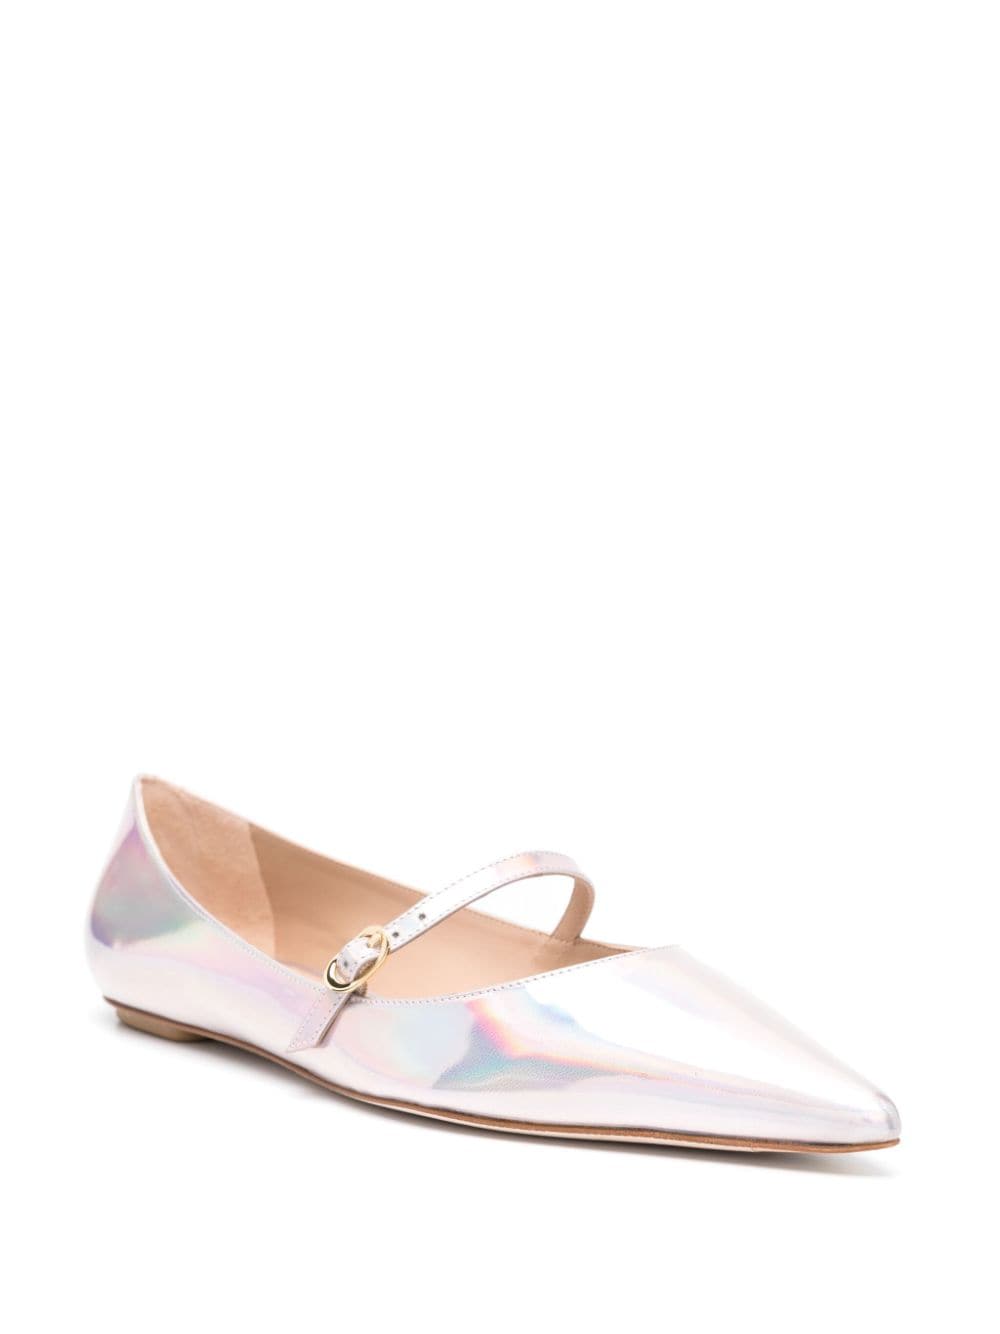 Stuart Weitzman Emilia Mary Jane ballerina shoes - Beige